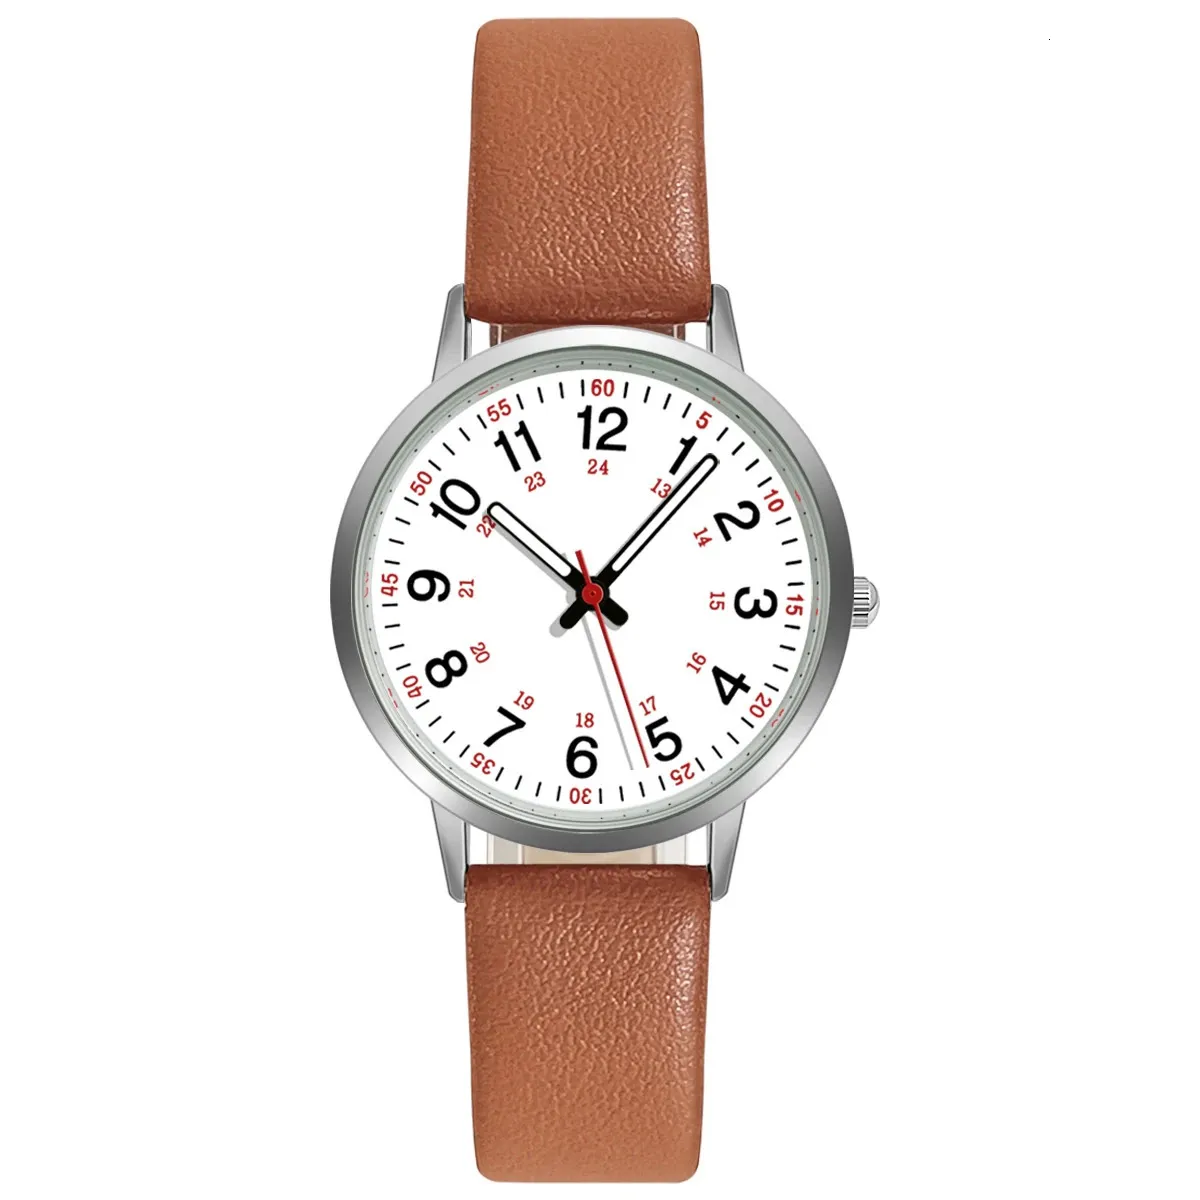 その他の時計ファッション女性は、女性のドレスクロックバックライトリロジュミュージャー231216のためのエレガントなクォーツPUレザーストラップ腕時計を見る